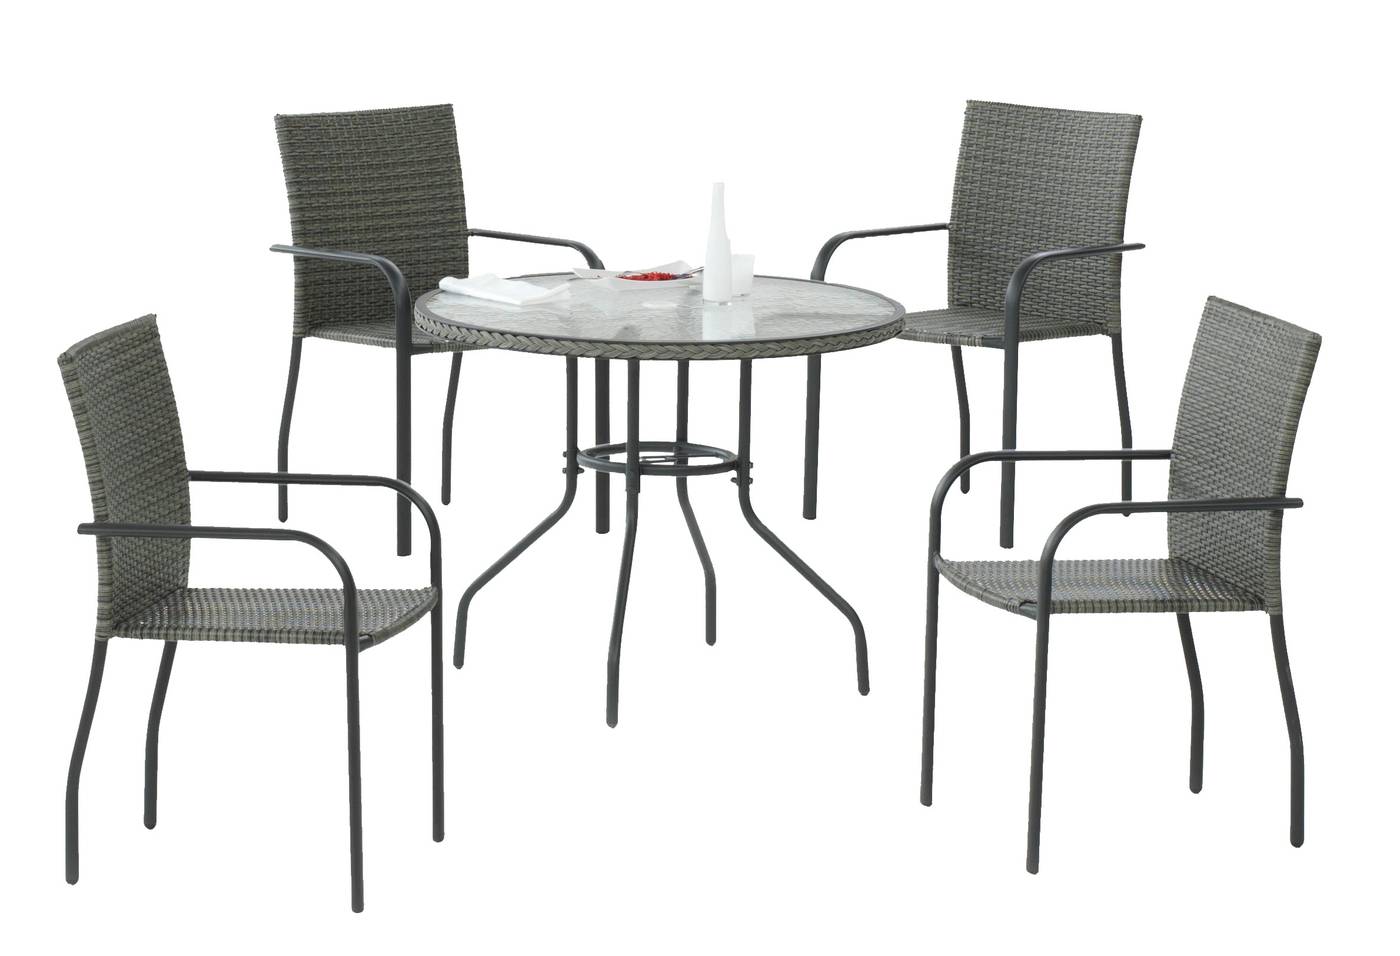 Conjunto de acero inoxidable color antracita y rattán sintético color gris: 1 mesa redonda 90 cm, con tablero de cristal templado + 4 sillones apilables